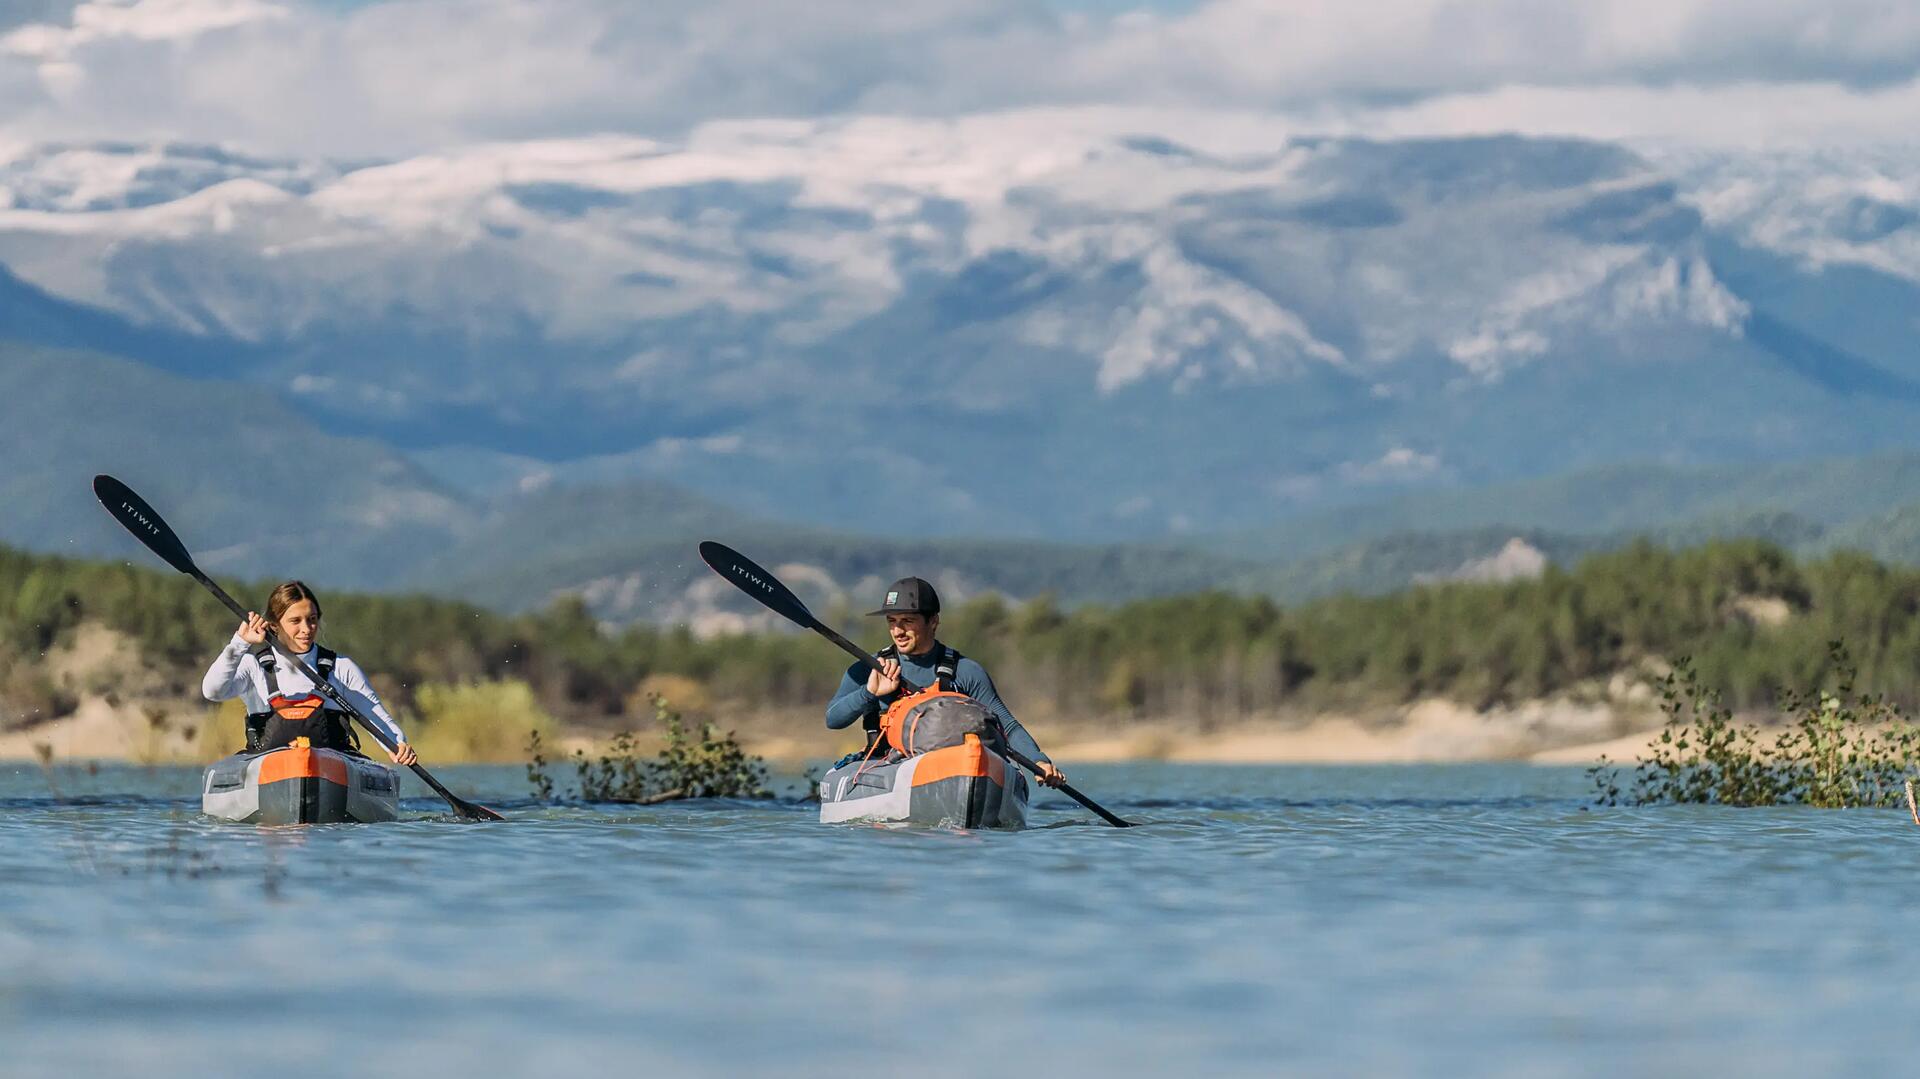 pagaia de carbono kayak 900 competição rio